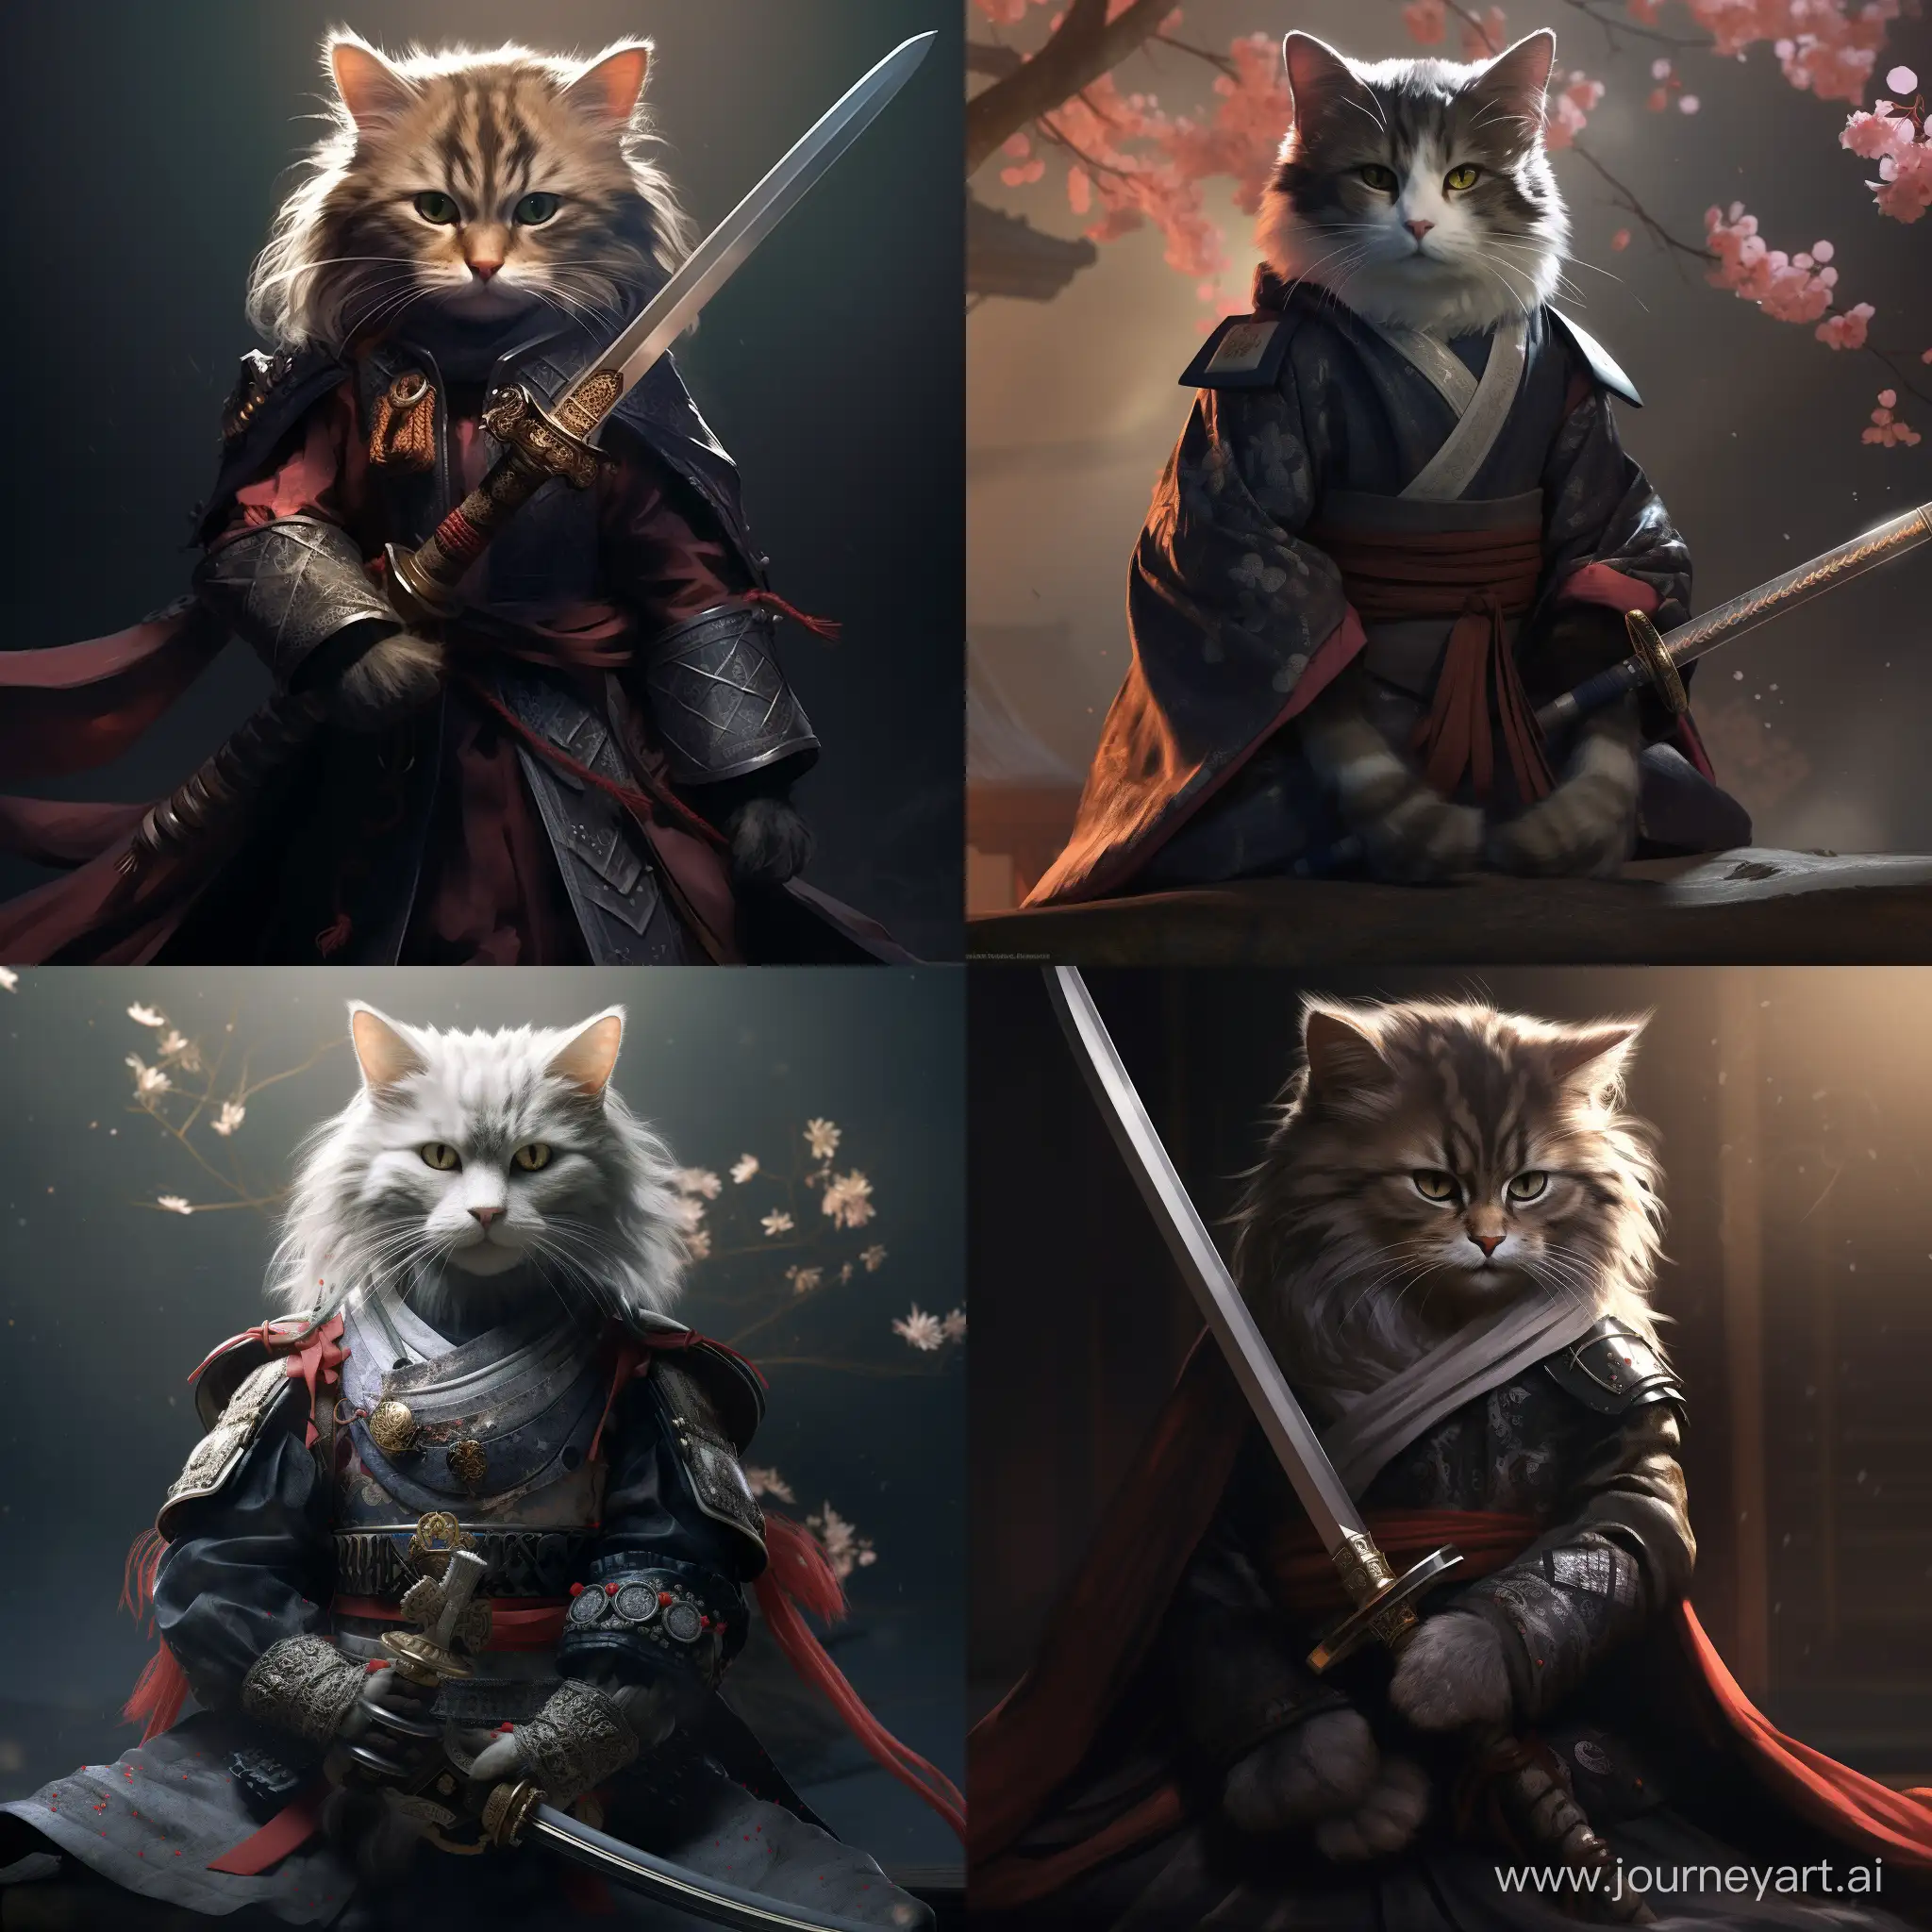 Artistic-Samurai-Cat-Sword-Sculpture